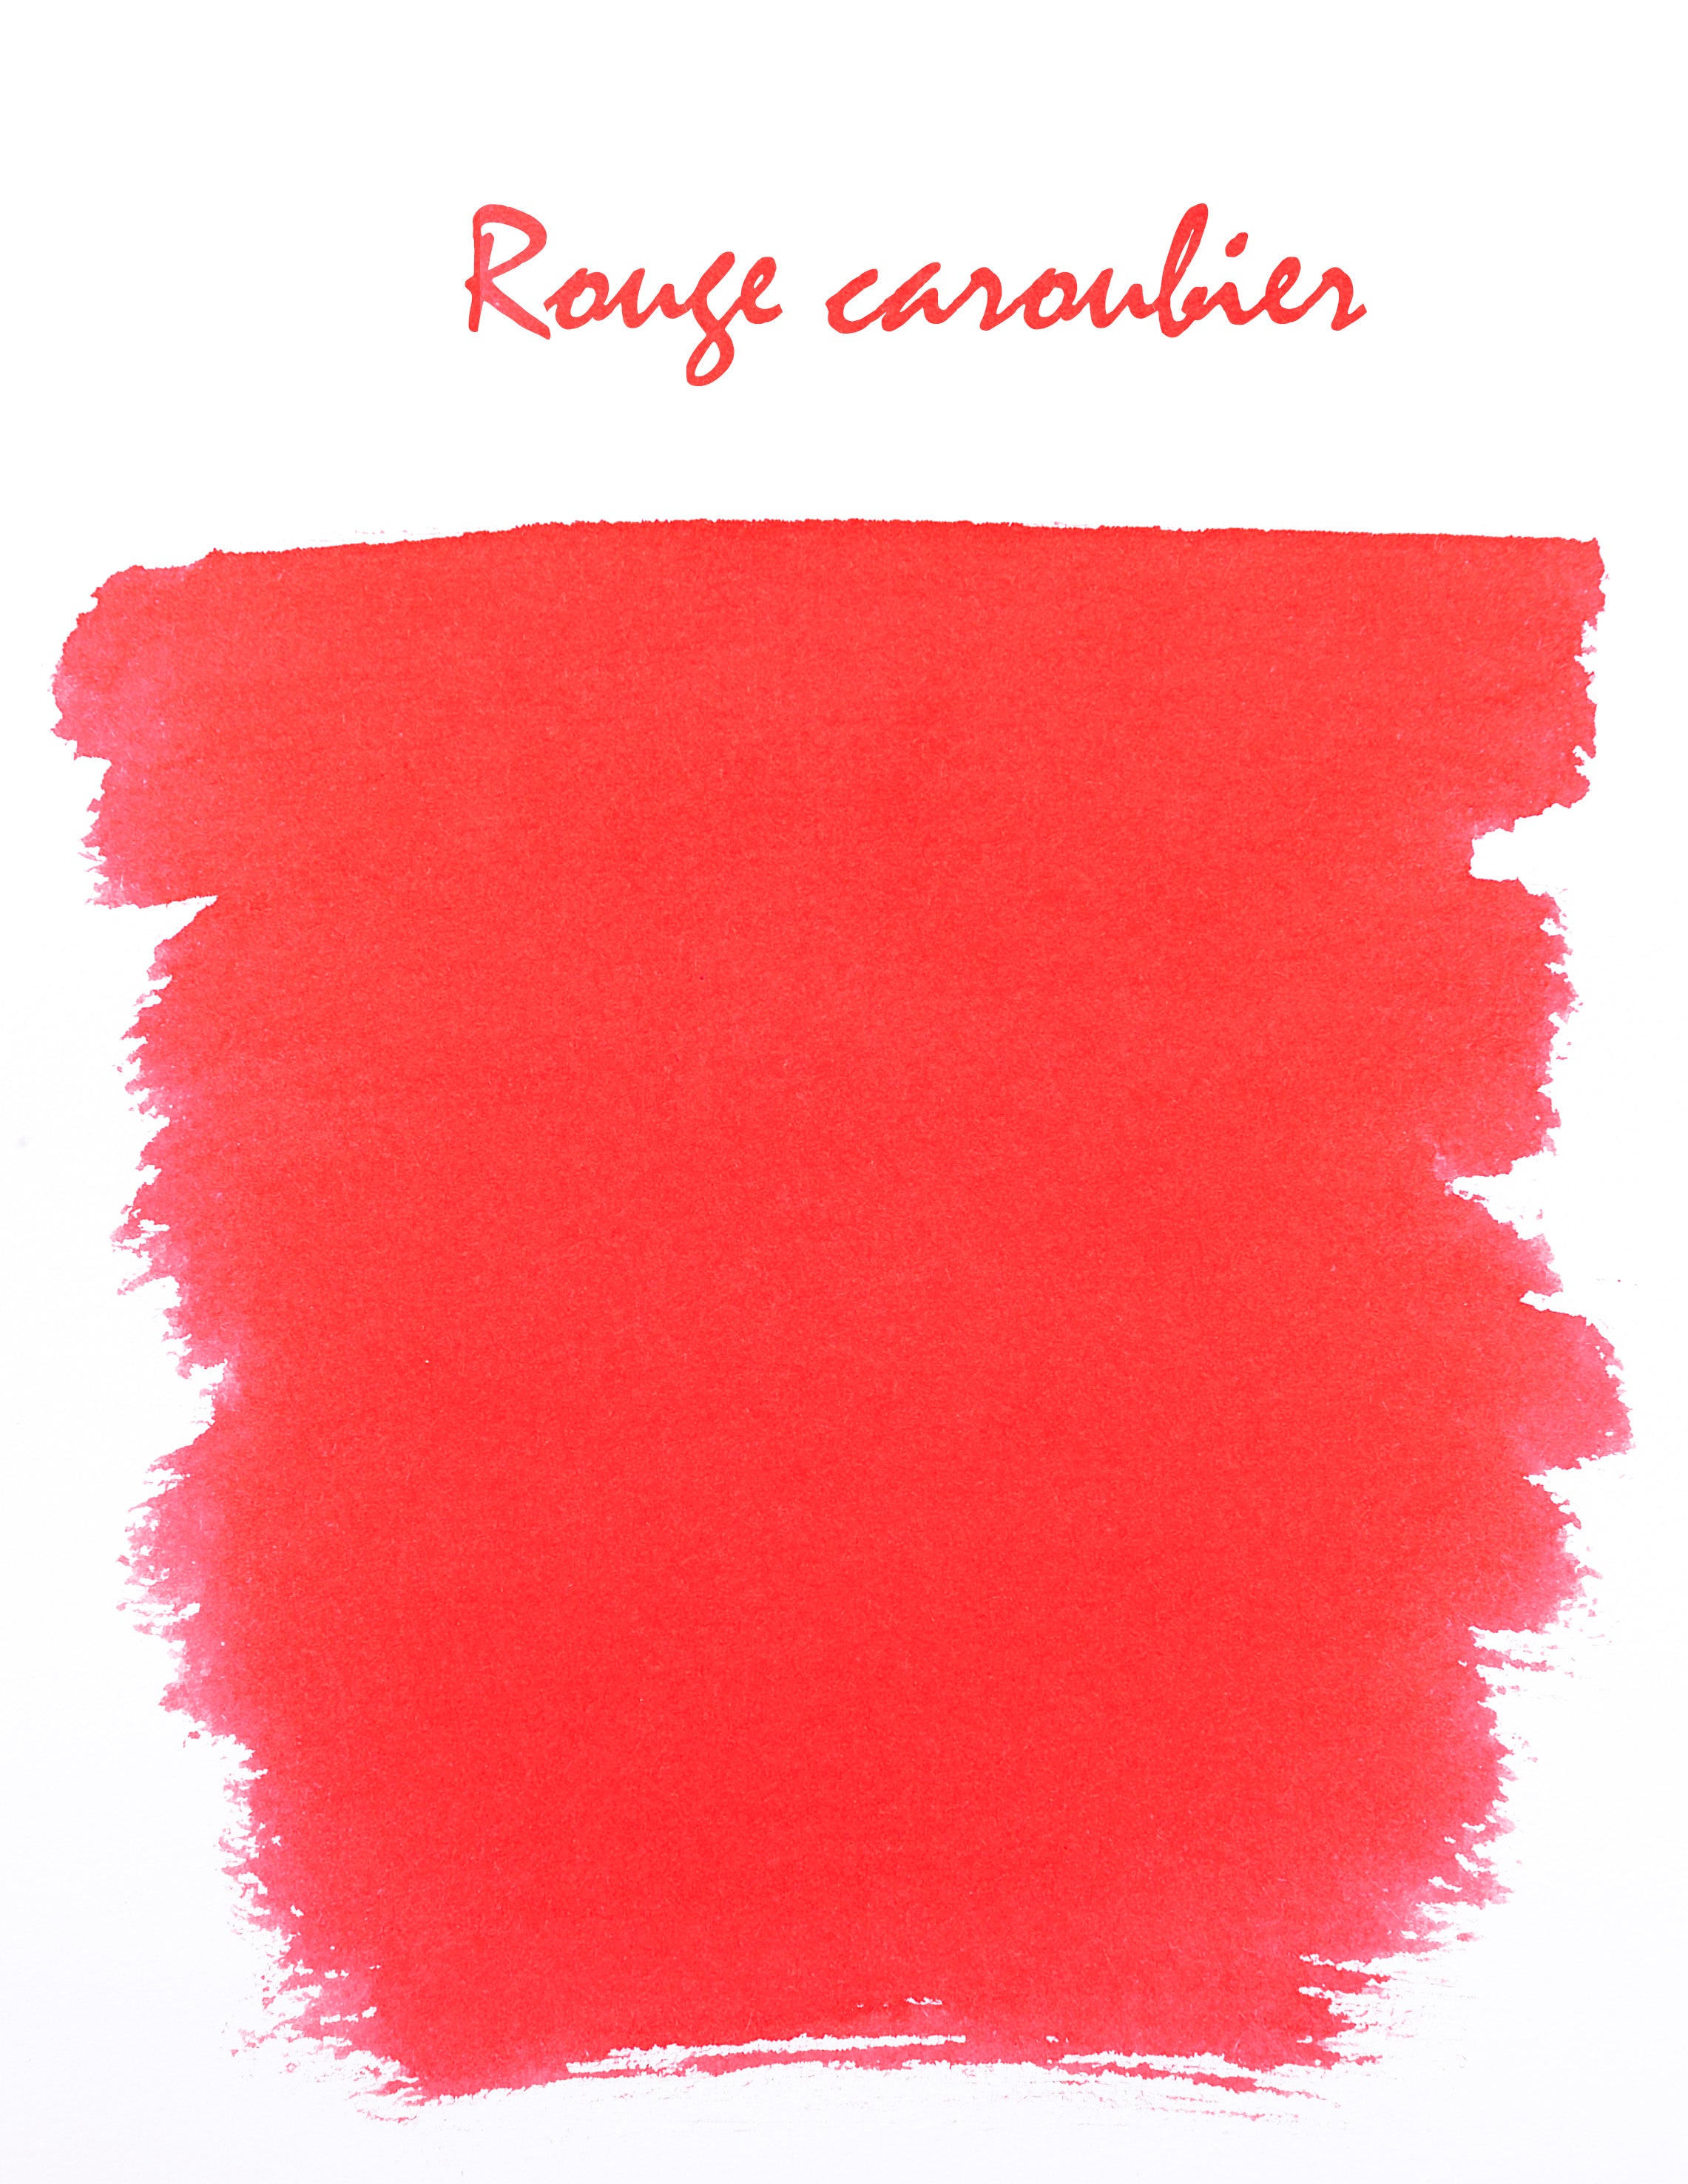 Tinte Johannisrot, 6 Patronen / rouge caroubier